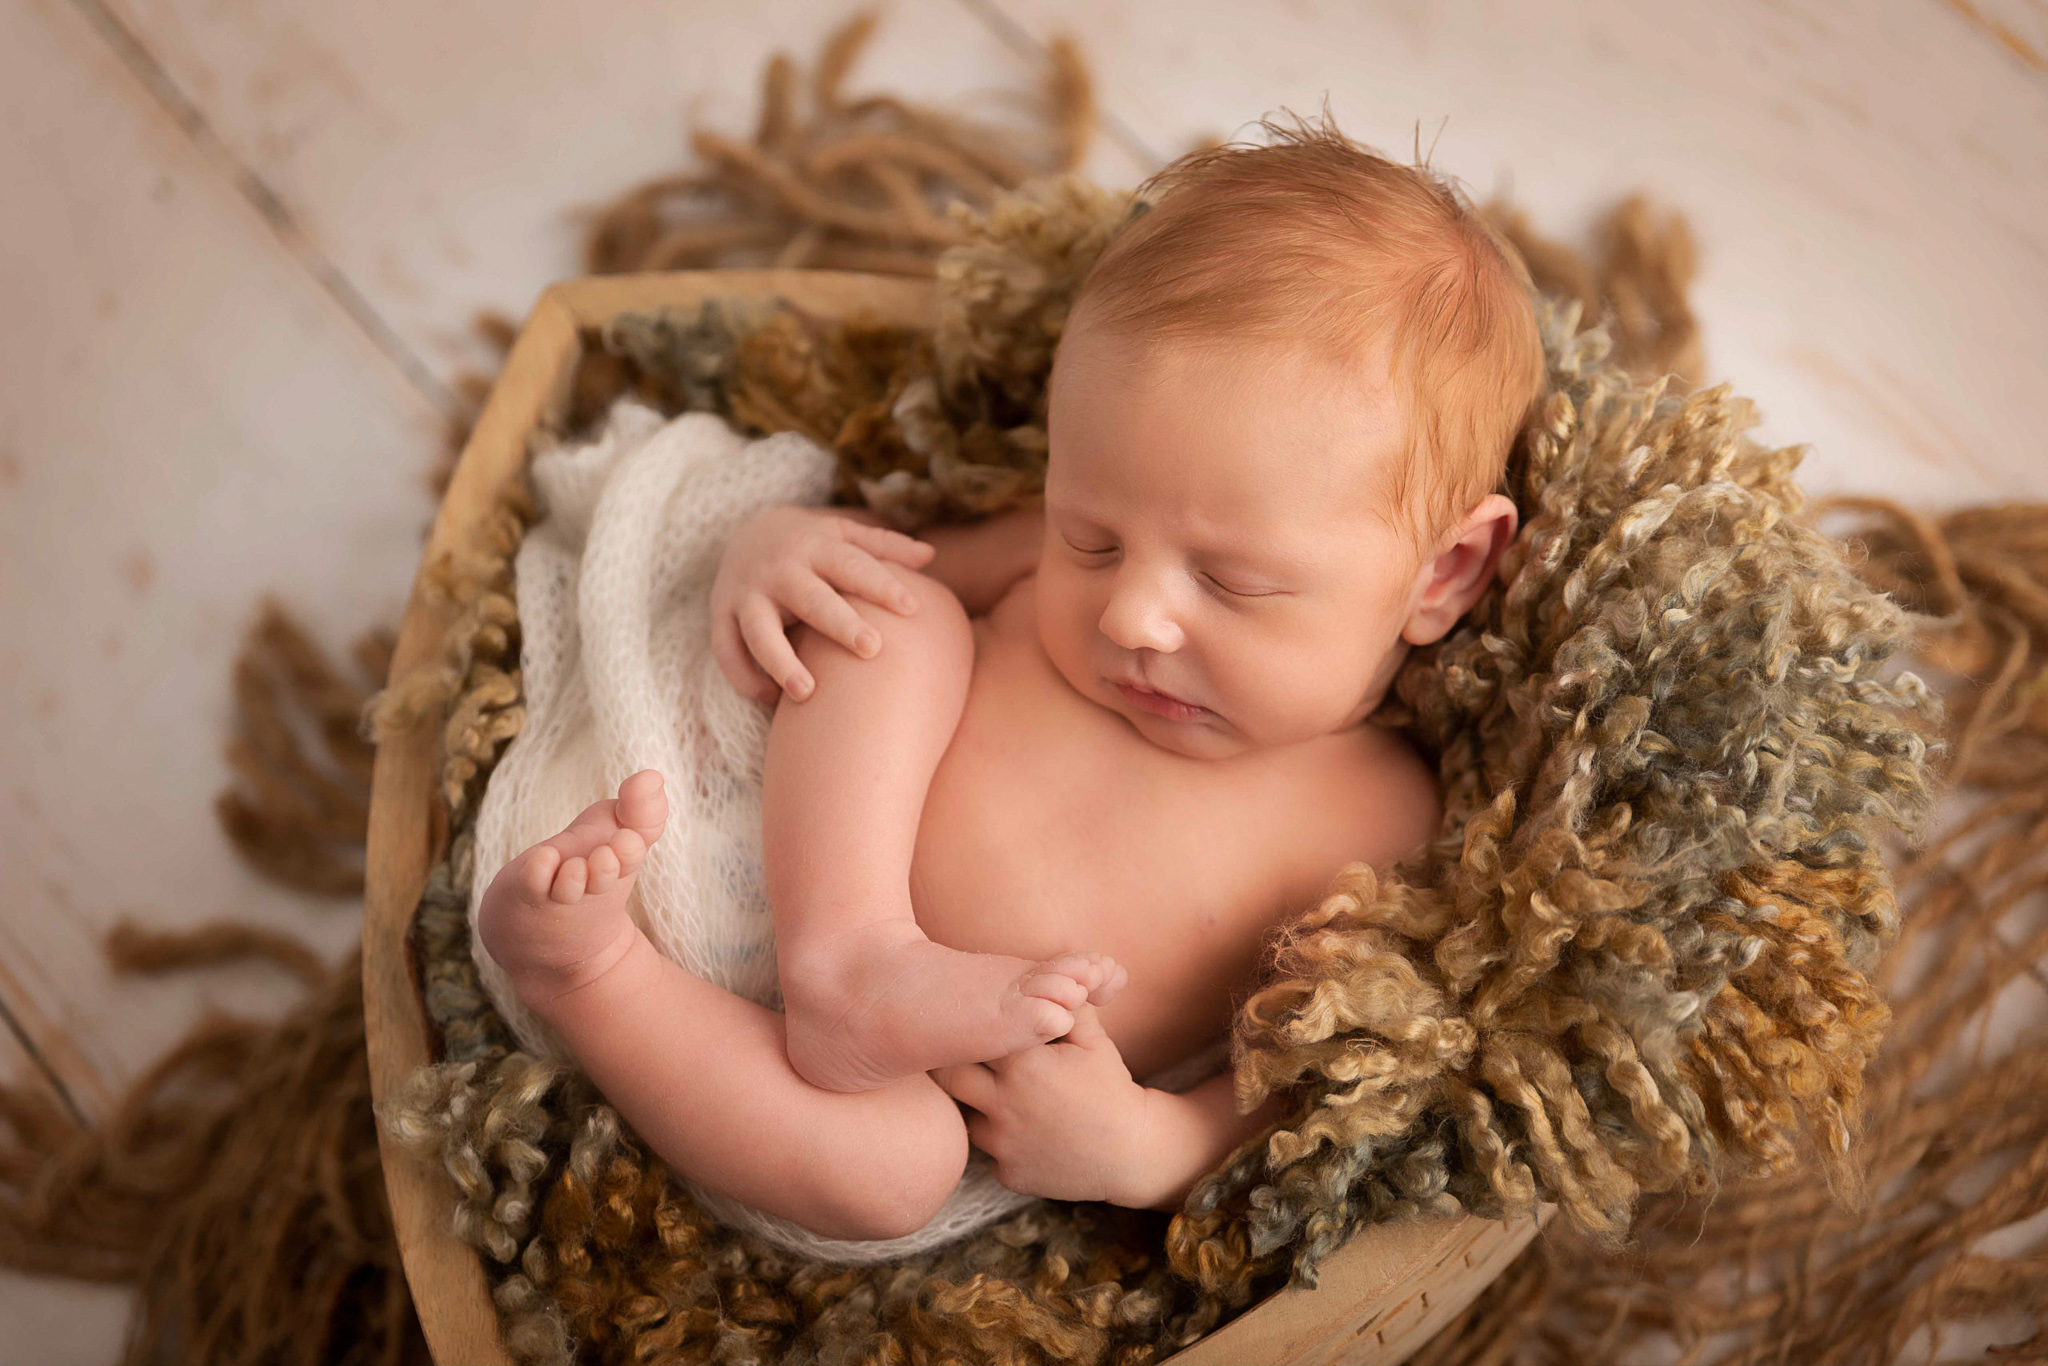 newborn photography, newborn and baby photography, baby photography, baby photography courses, newborn and baby photography courses